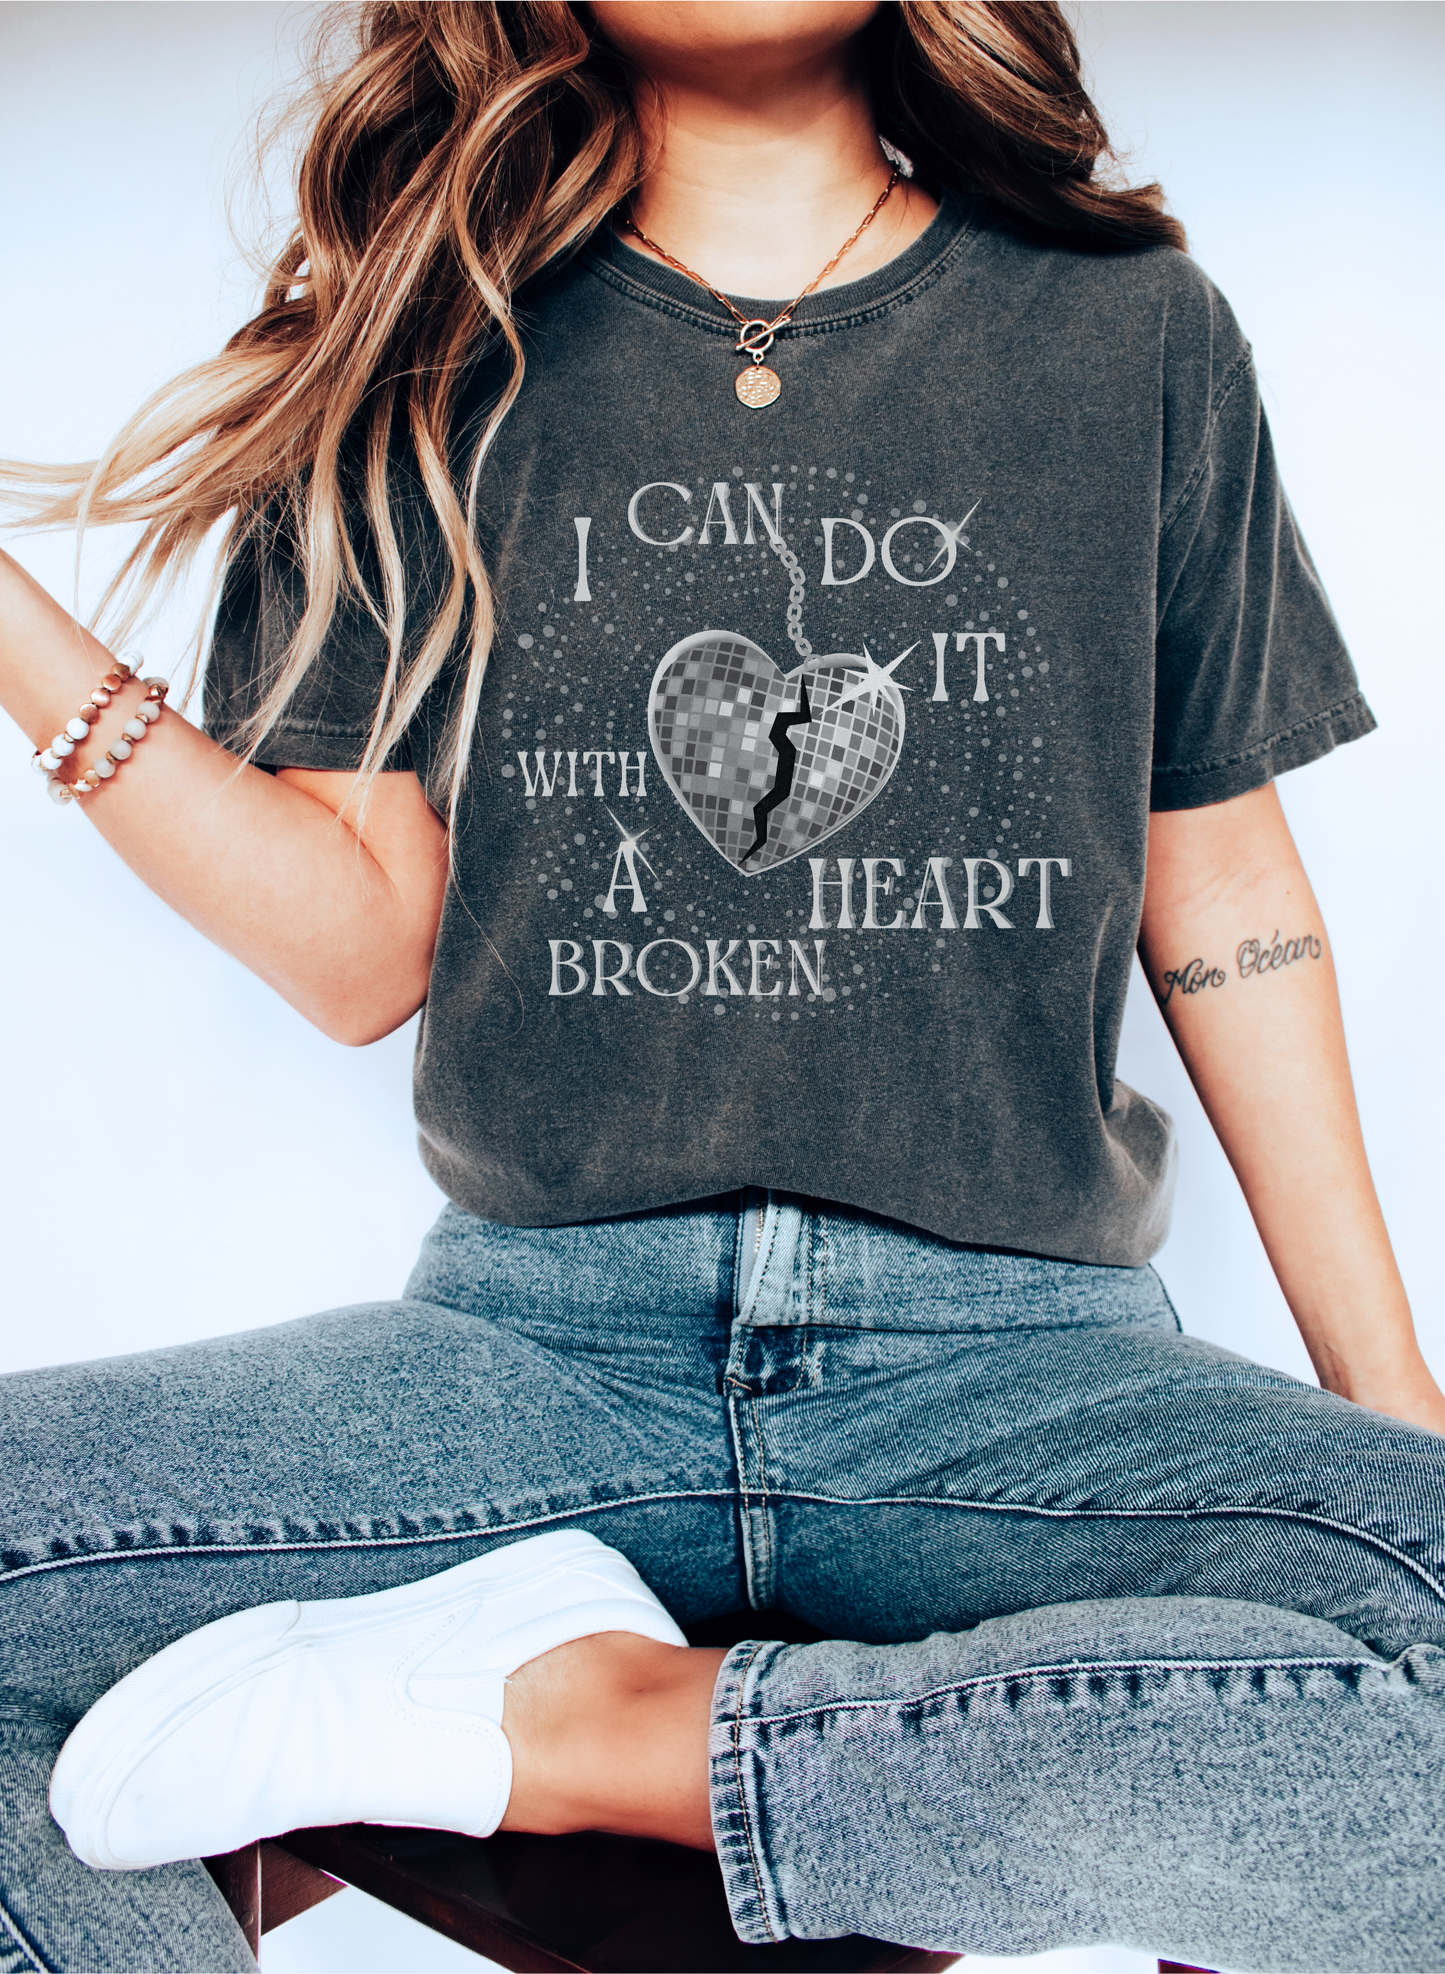 With A Broken Heart T-shirt